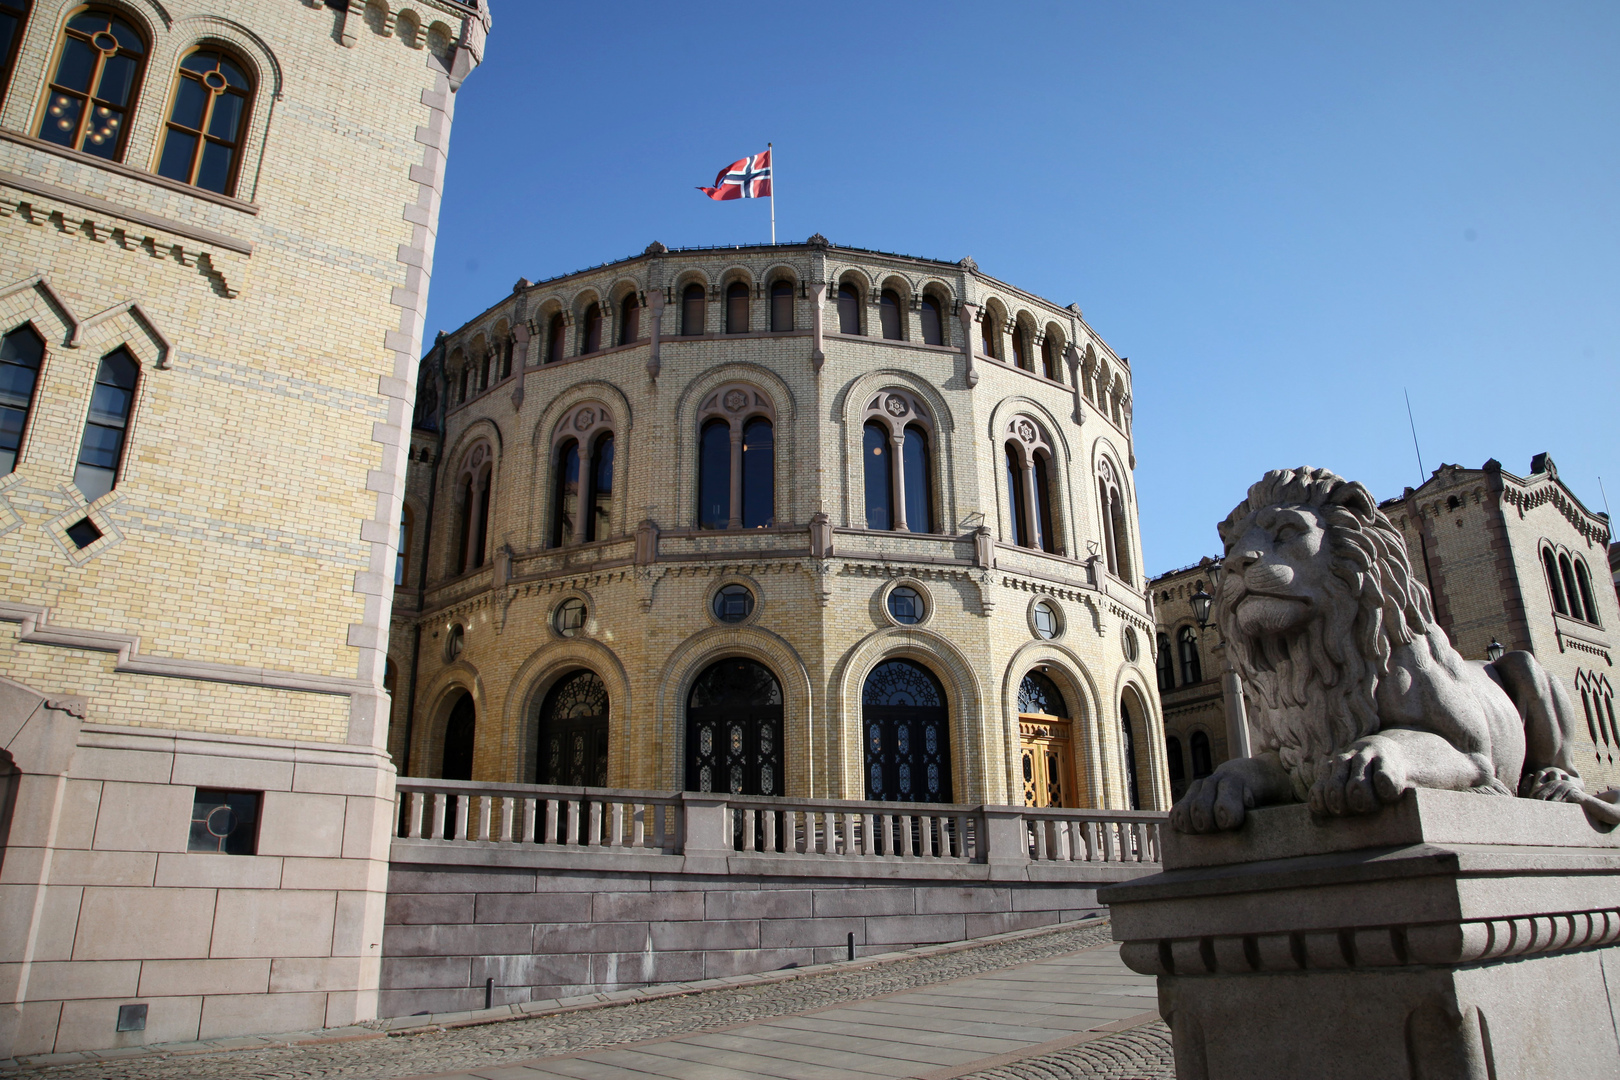 النرويج تعلن إلغاء معظم قيود كورونا والعودة للحياة الطبيعية